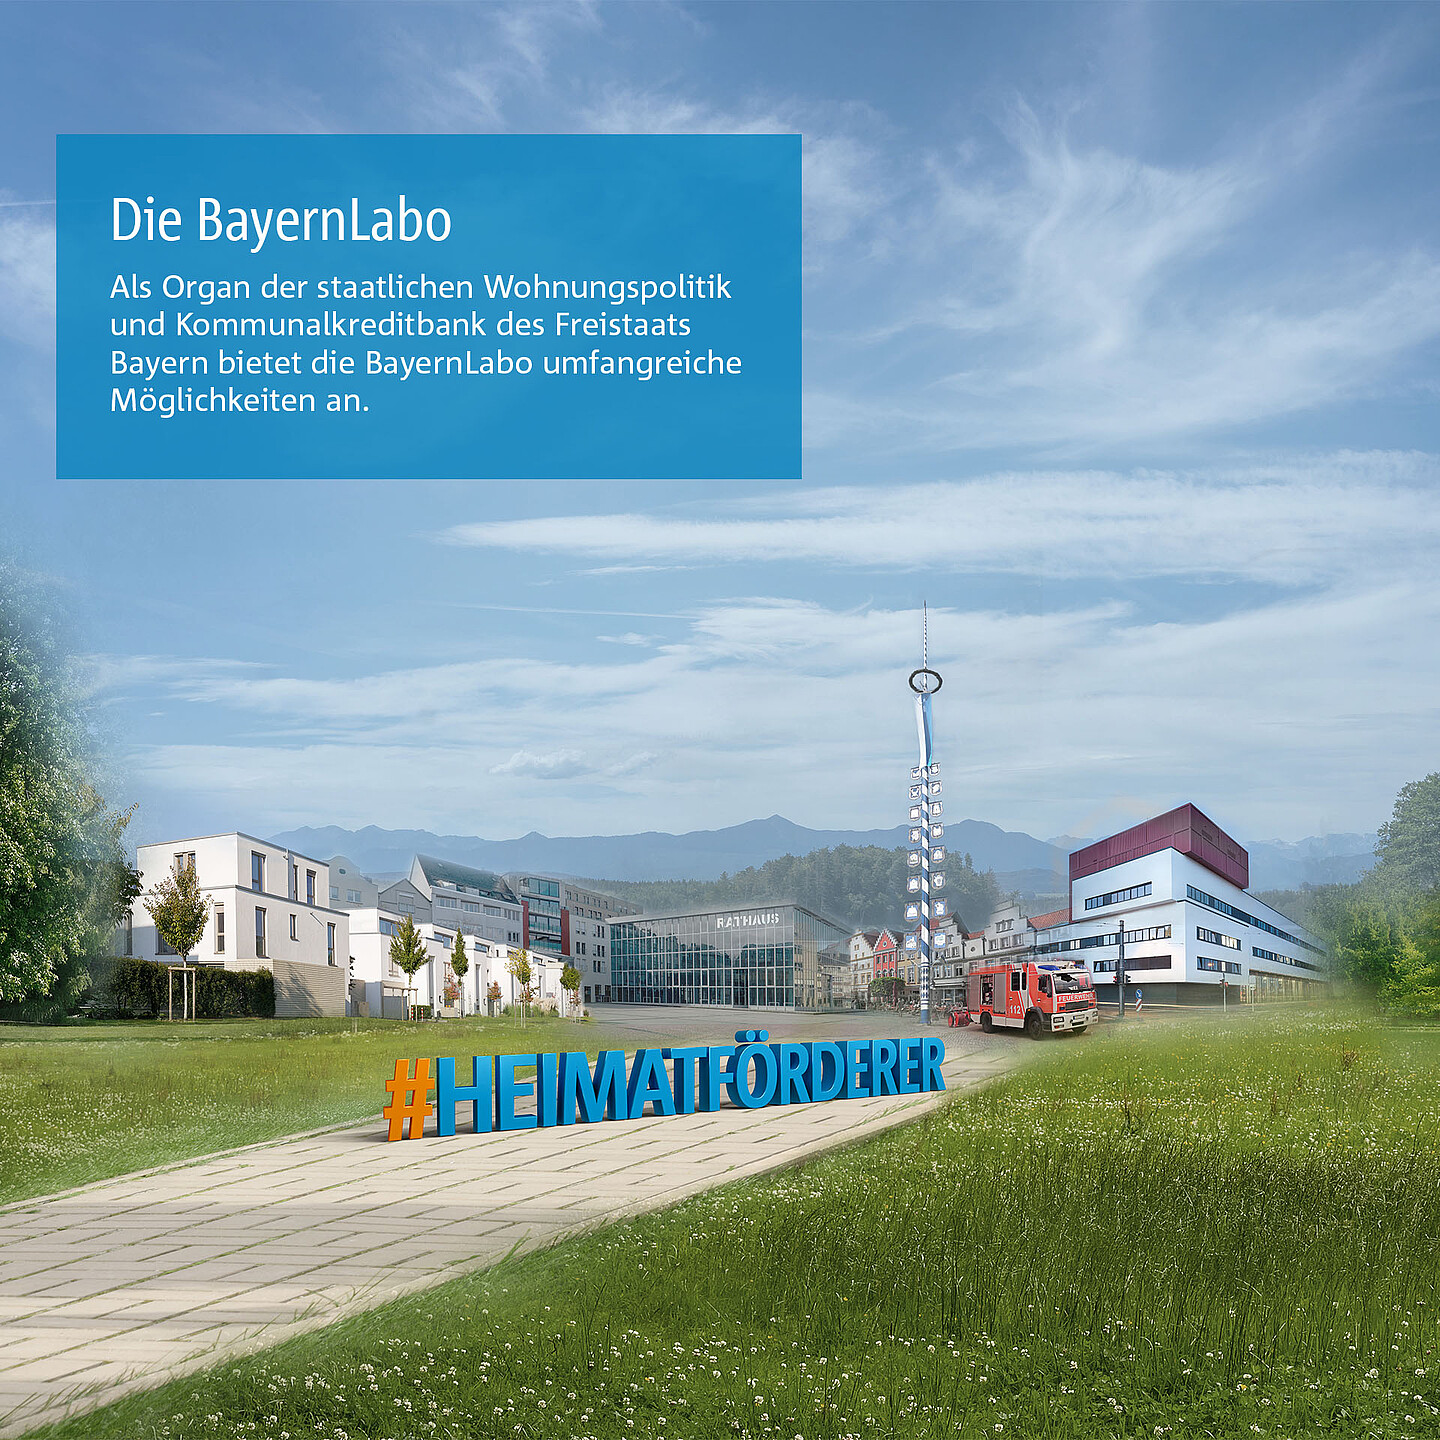 Umfangreiche Möglichekeiten der BayernLabo als Organ der staatlichen Wohnungspolitik.